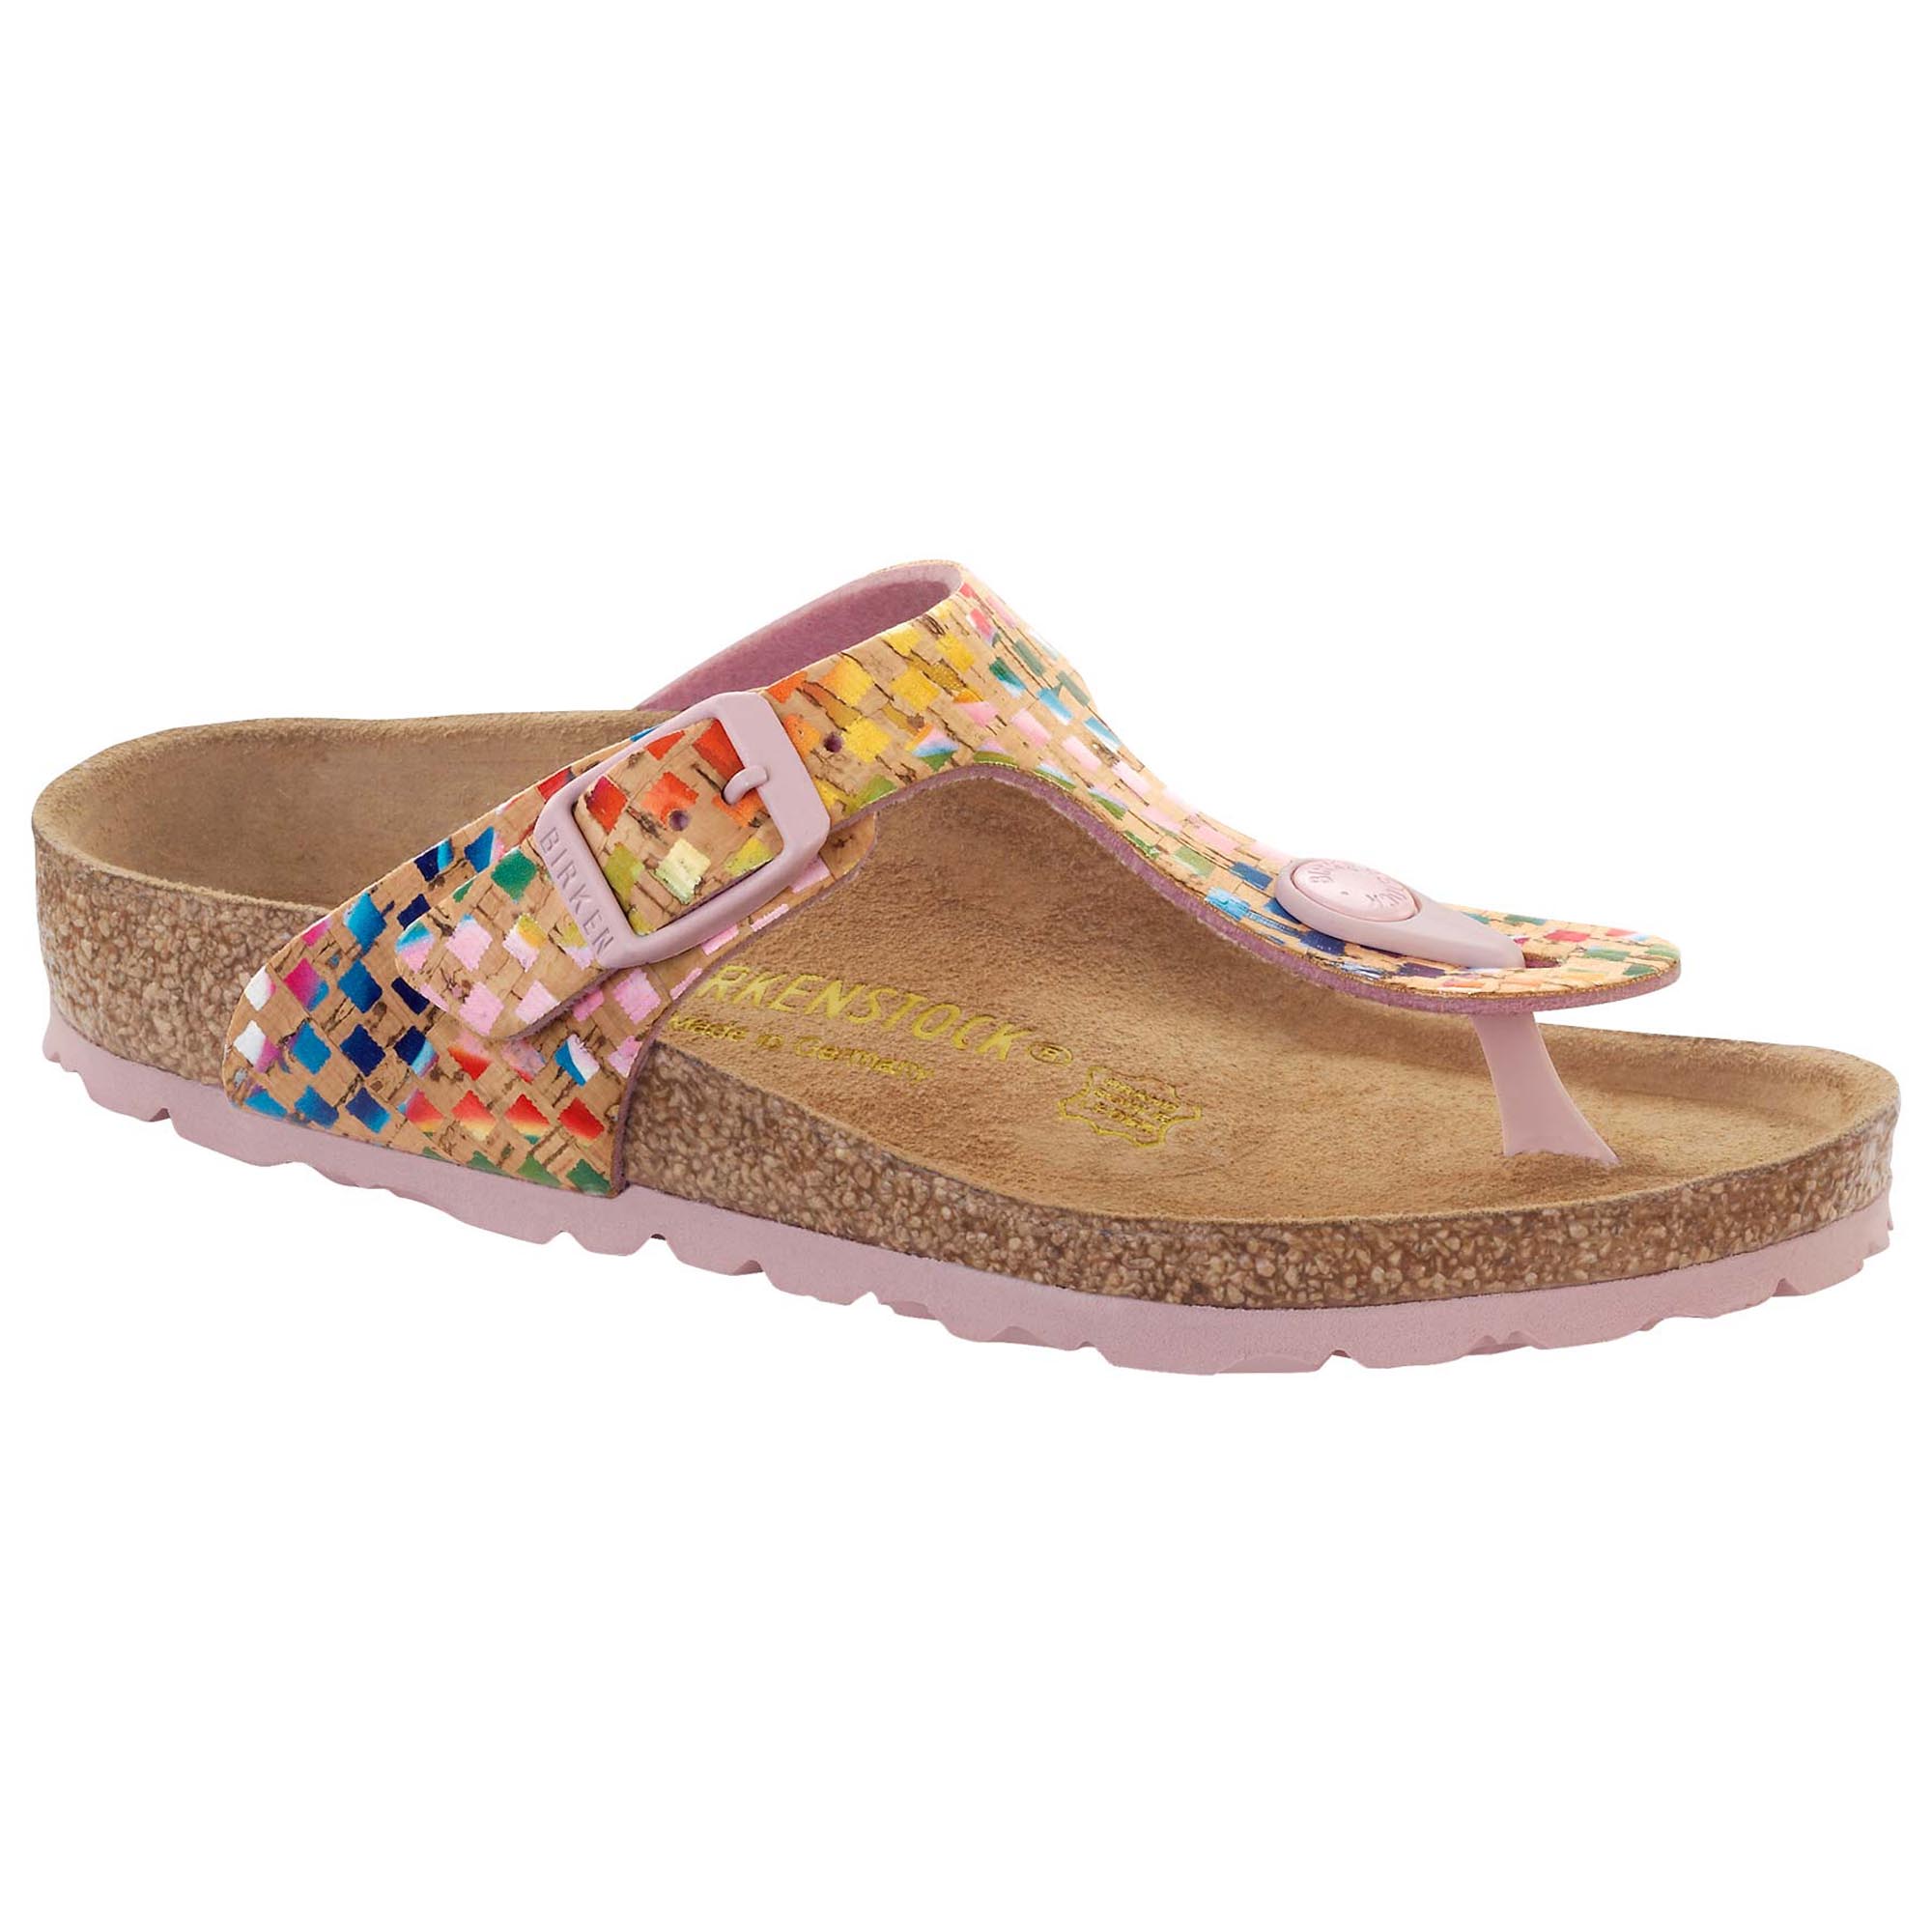 birkenstock rainbow sandals